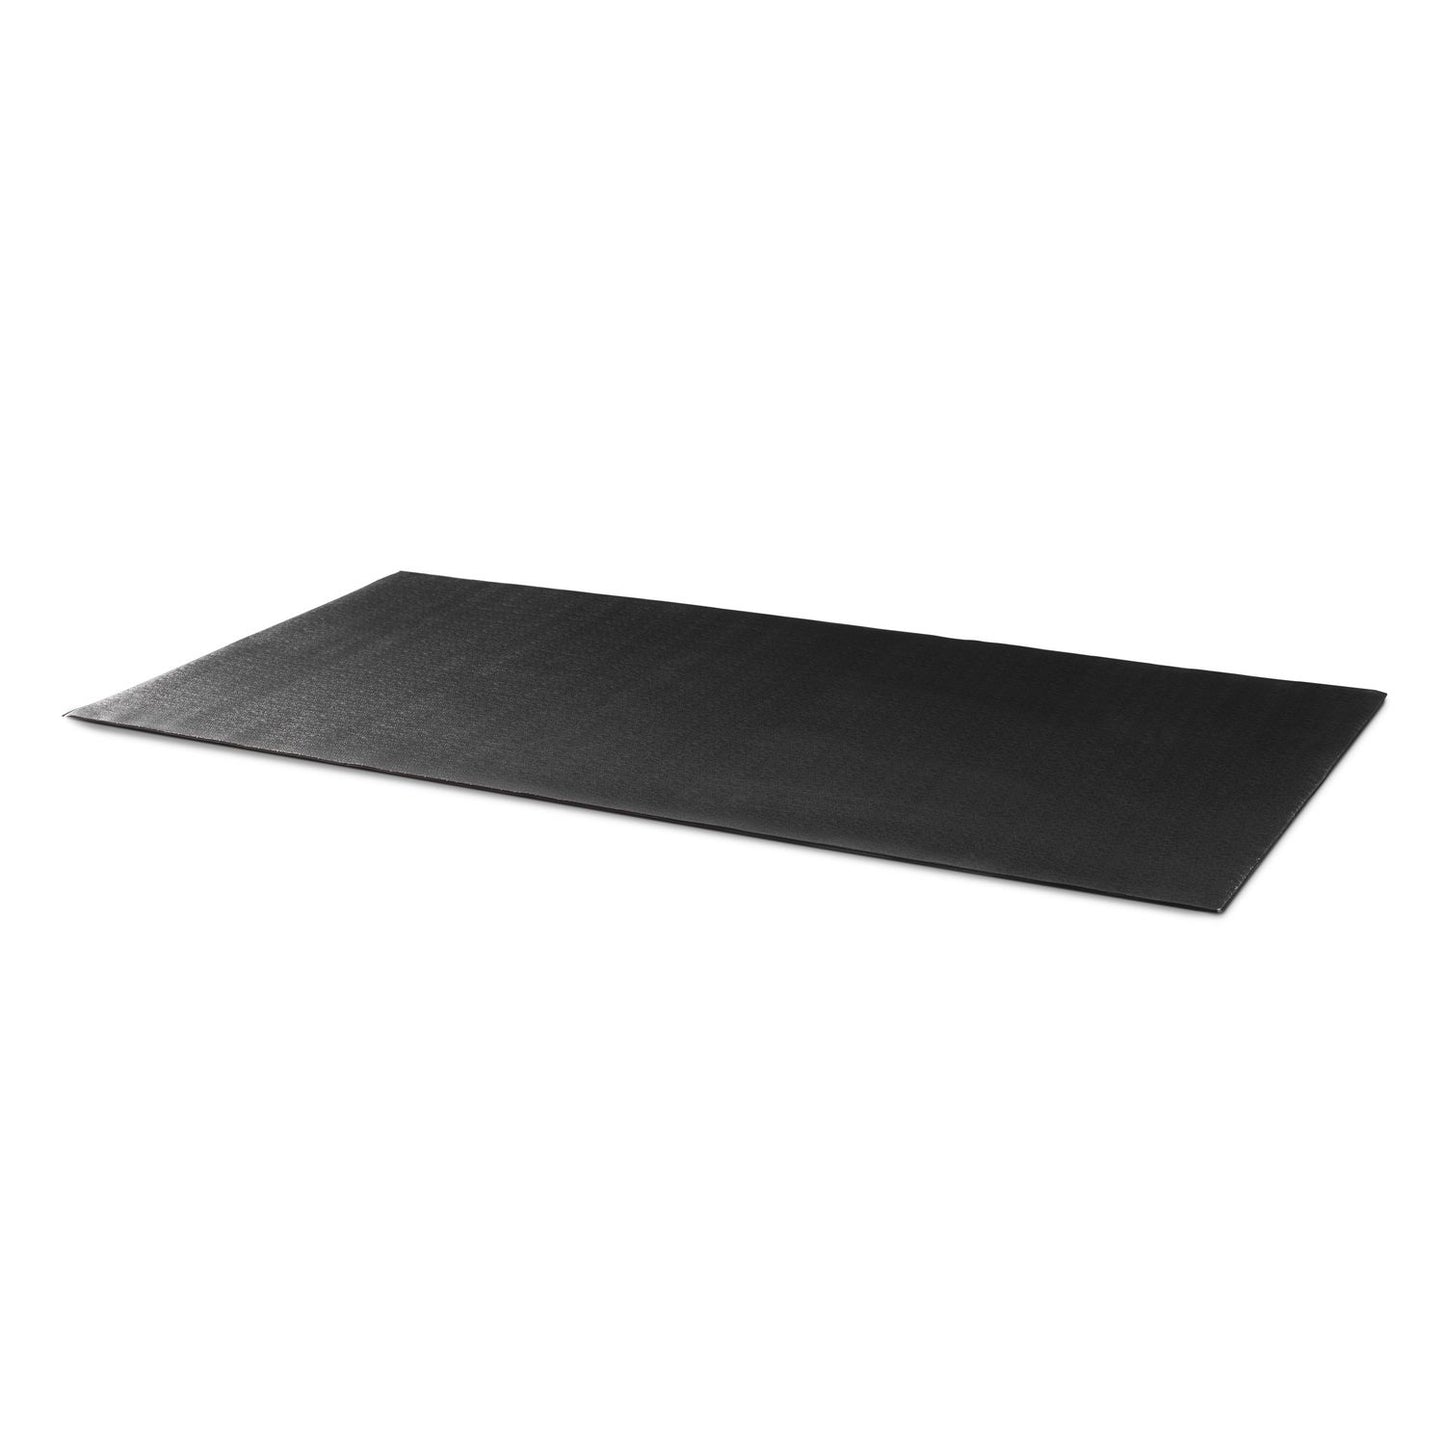 NordicTrack - Equipment Floor Mat